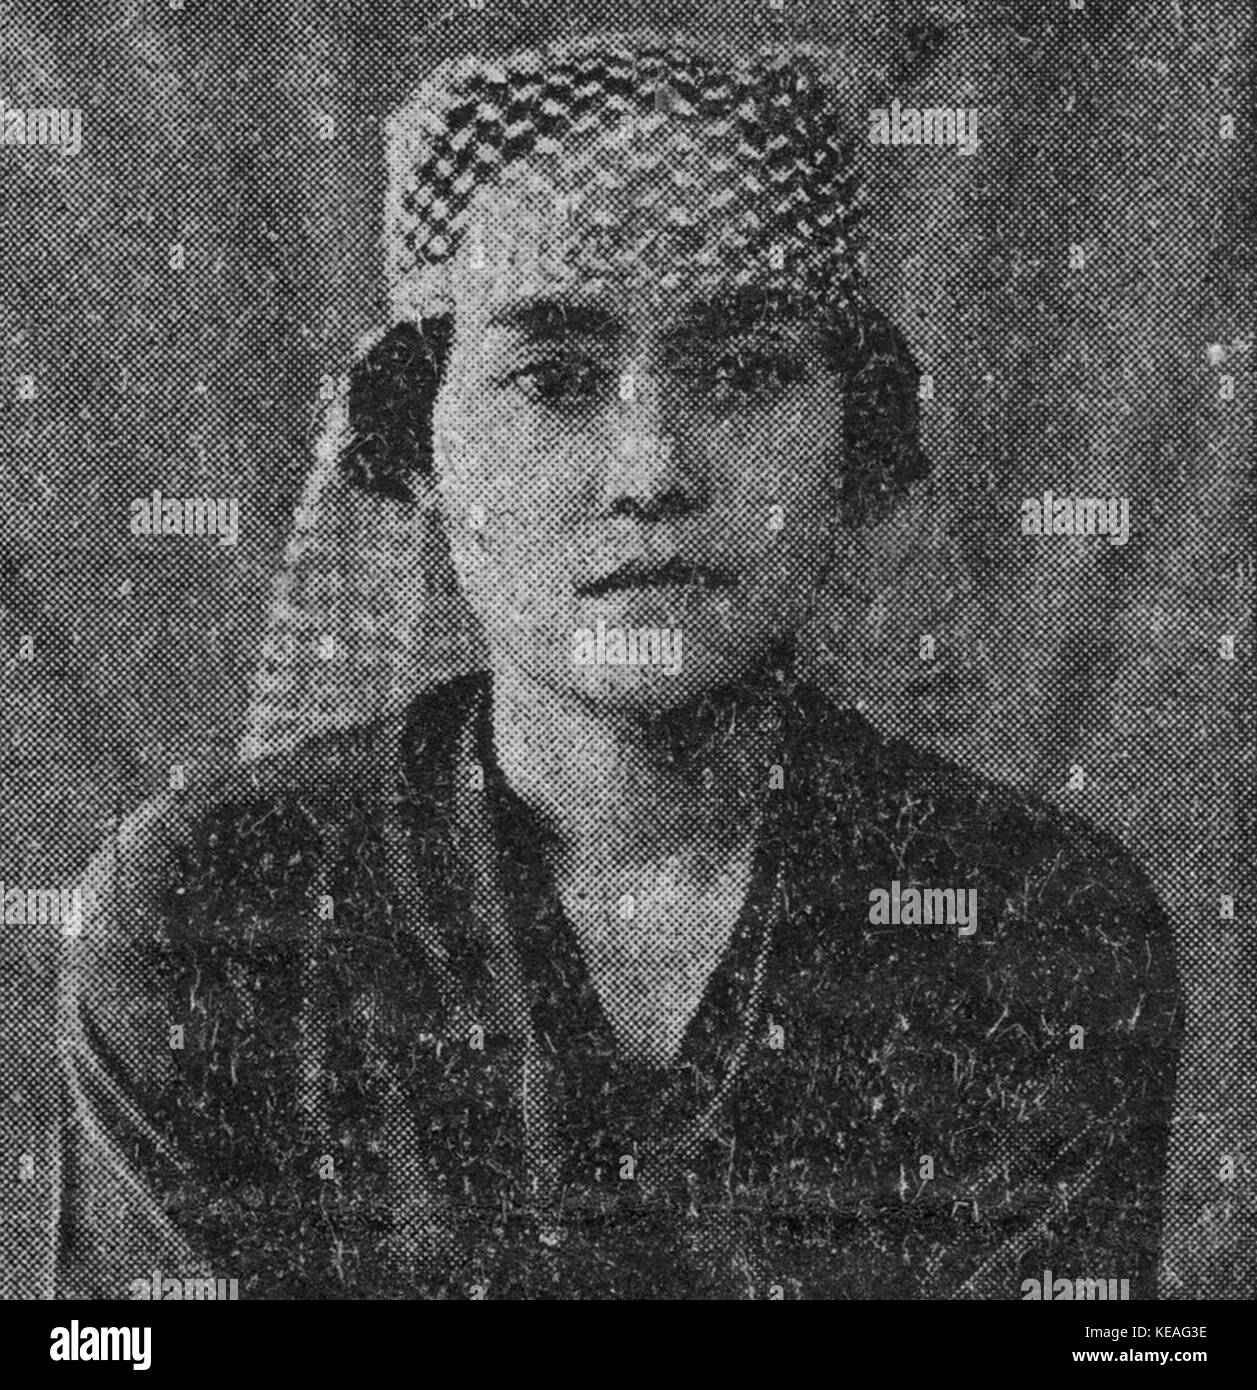 Nji R Hadji Djoelaeha, His Master's Voice Advertisement, Surabaya (c 1930s) Stock Photo